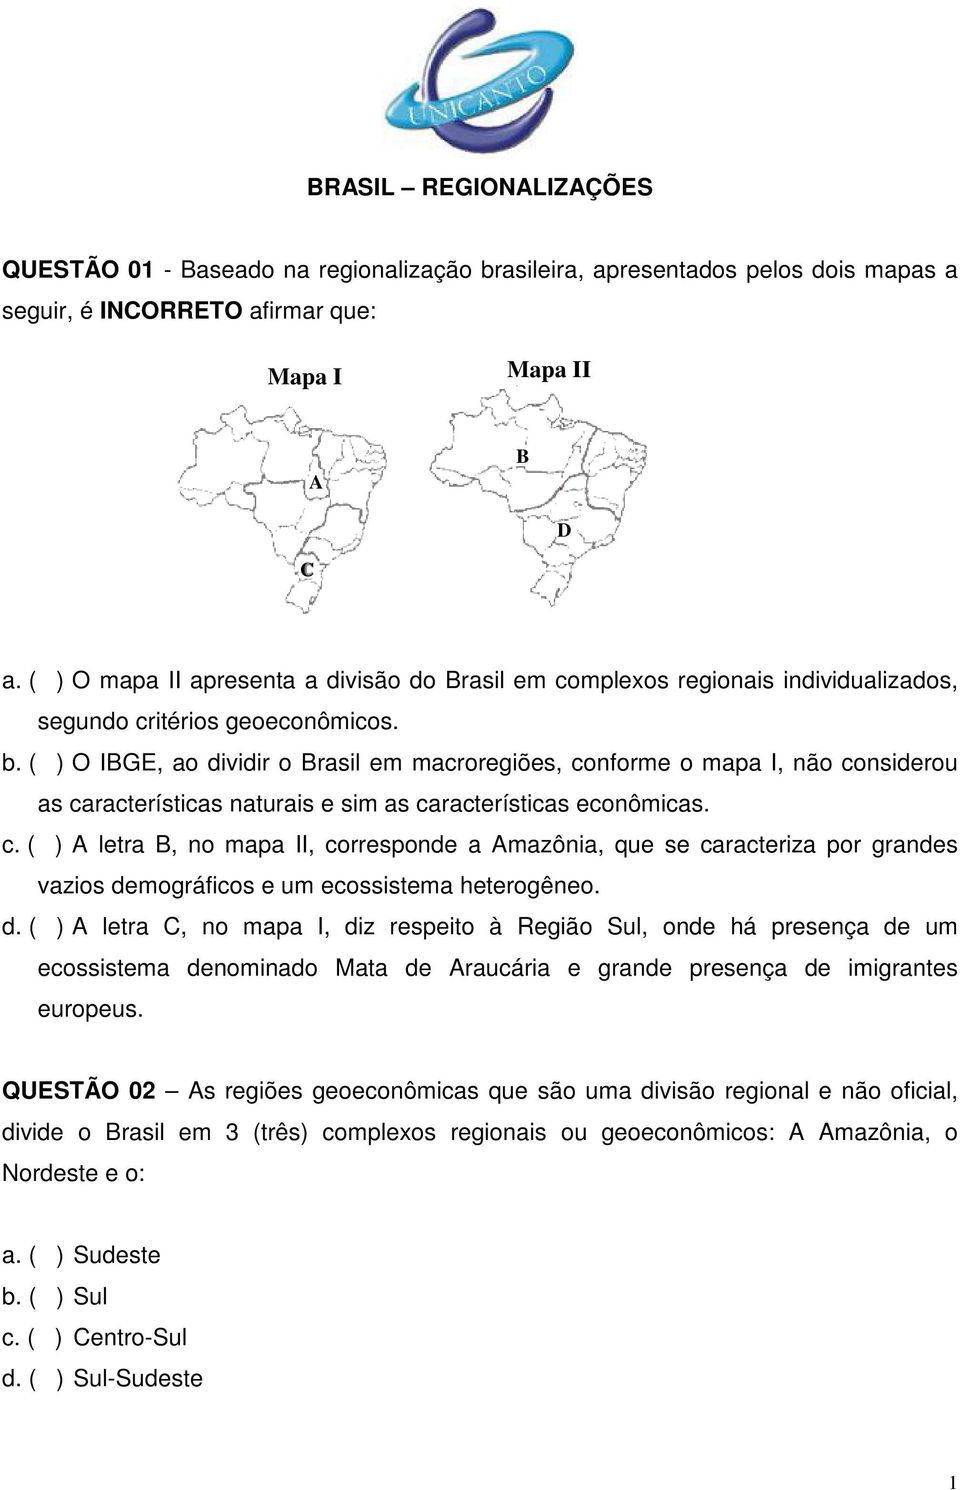 ( ) O IBGE, ao dividir o Brasil em macroregiões, conforme o mapa I, não considerou as características naturais e sim as características econômicas. c. ( ) A letra B, no mapa II, corresponde a Amazônia, que se caracteriza por grandes vazios demográficos e um ecossistema heterogêneo.